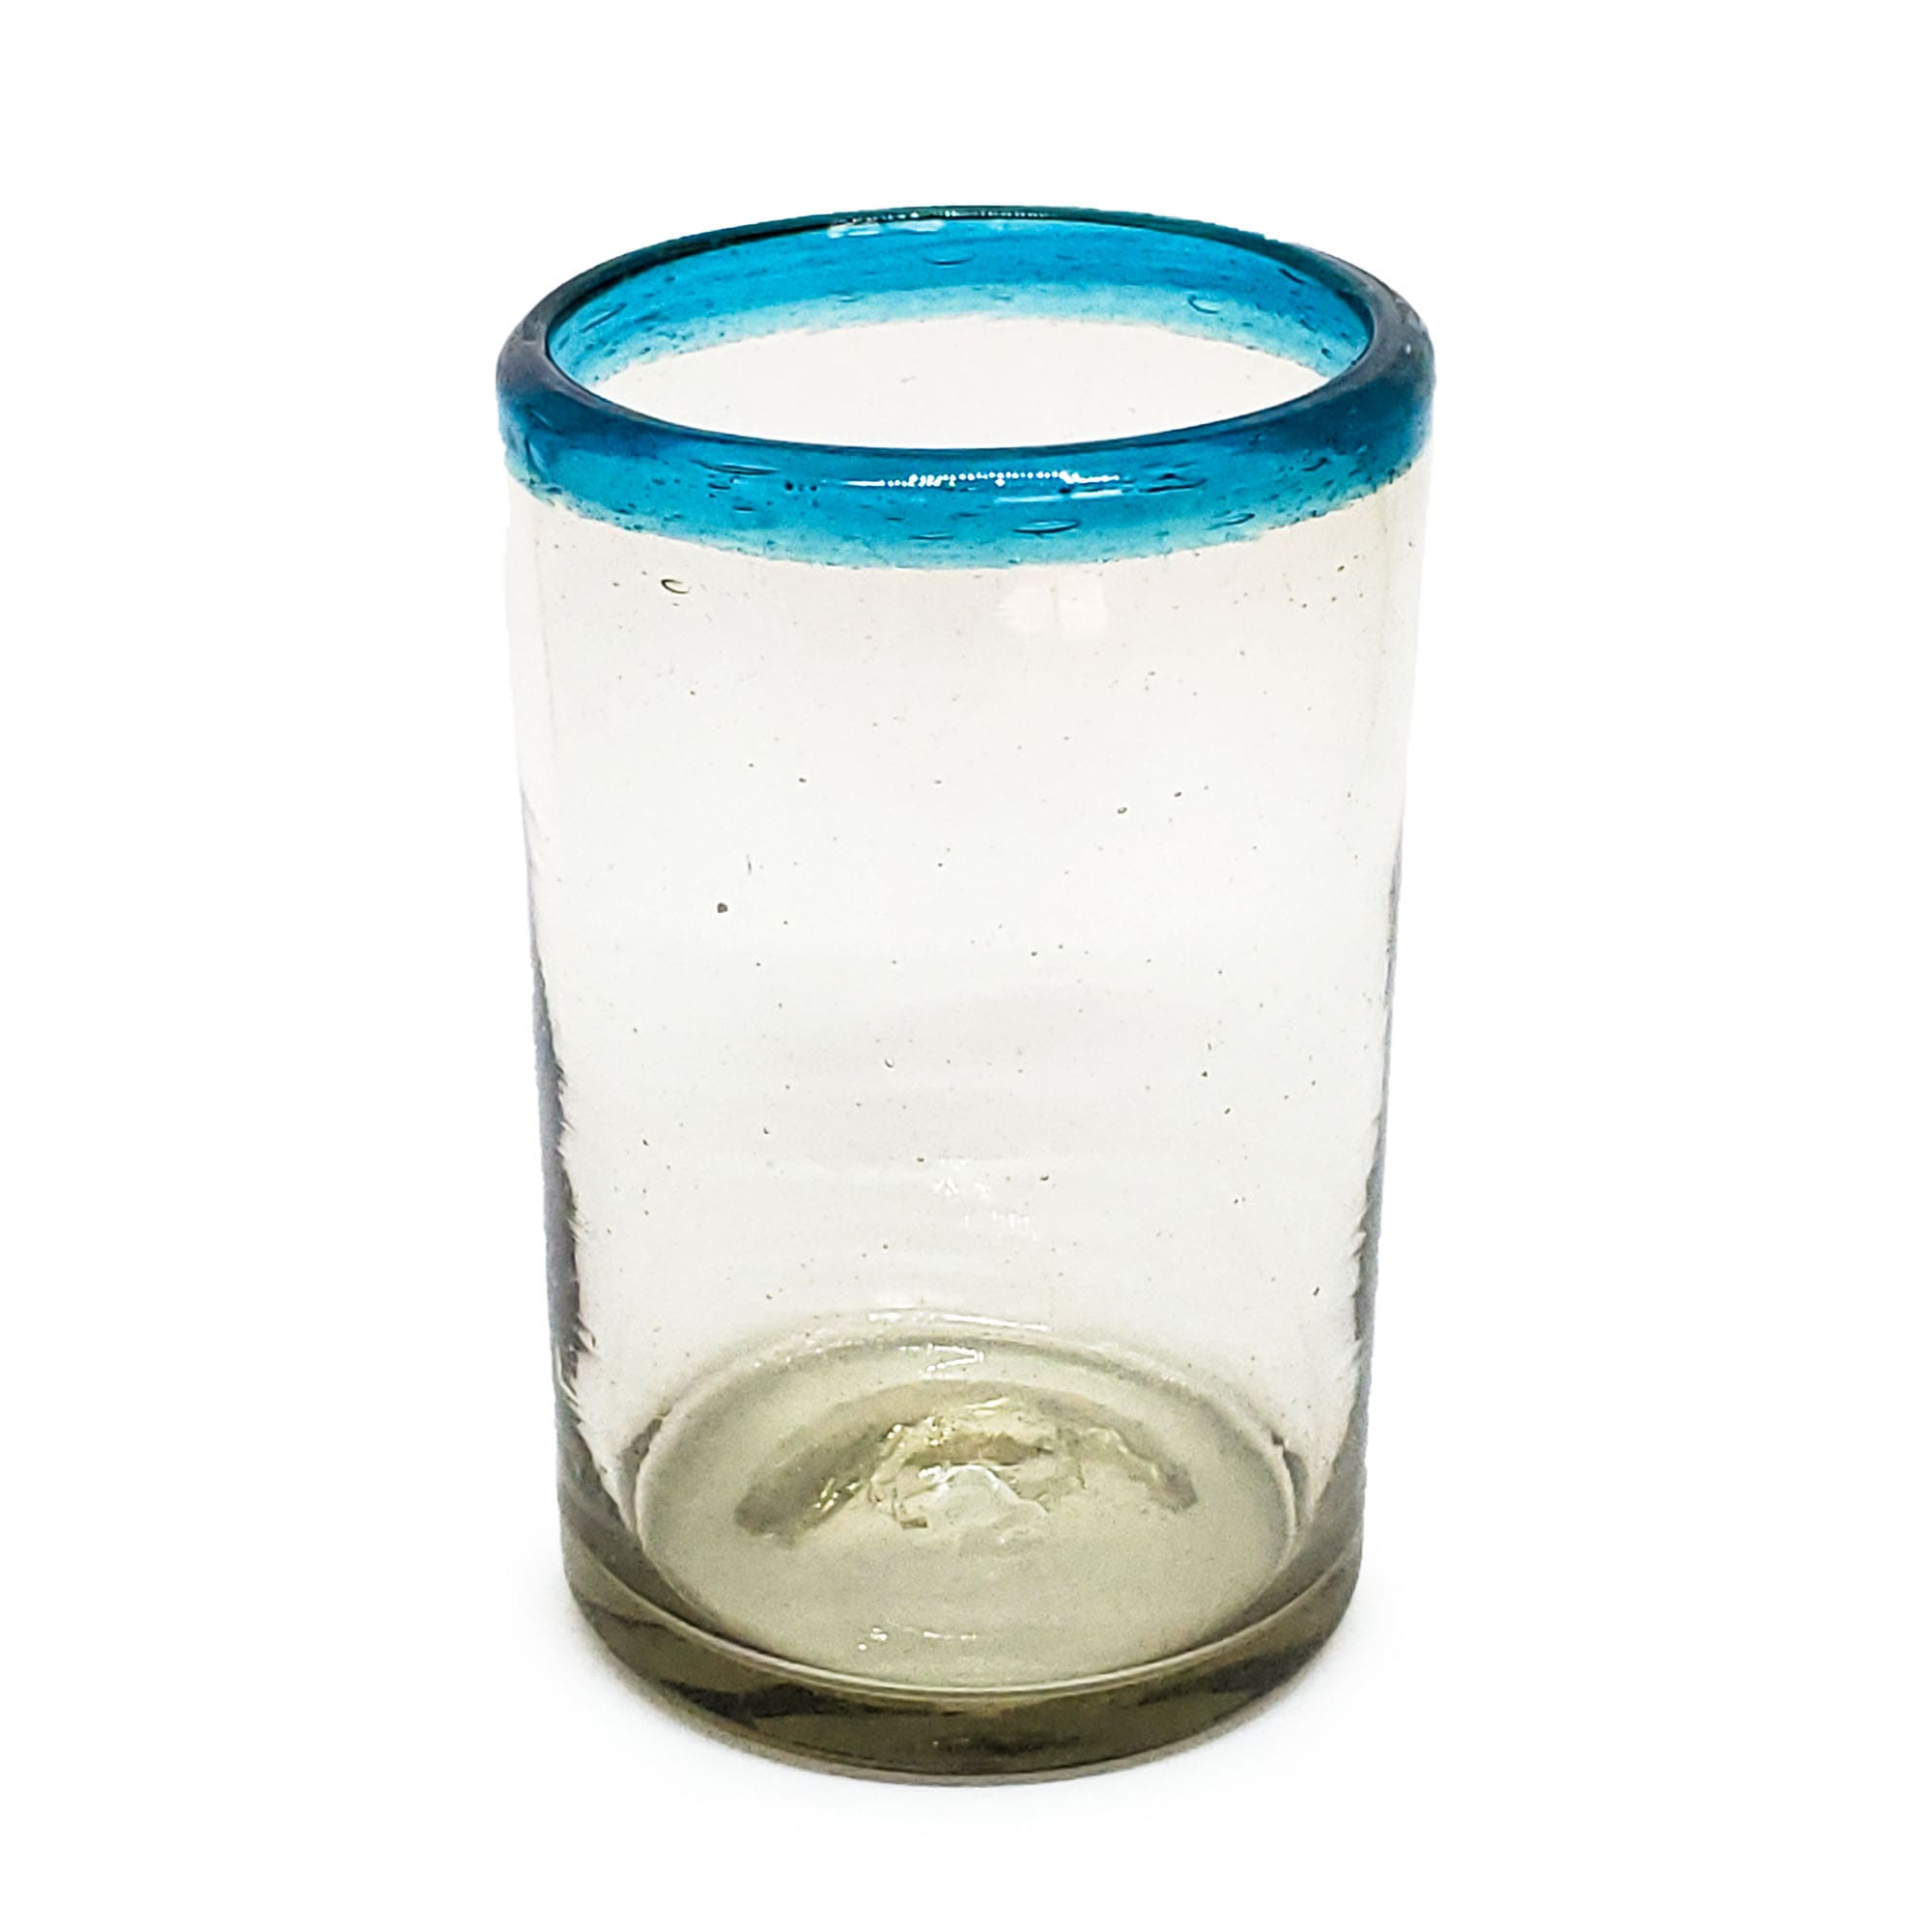 VIDRIO SOPLADO / vasos grandes con borde azul aqua, 14 oz, Vidrio Reciclado, Libre de Plomo y Toxinas